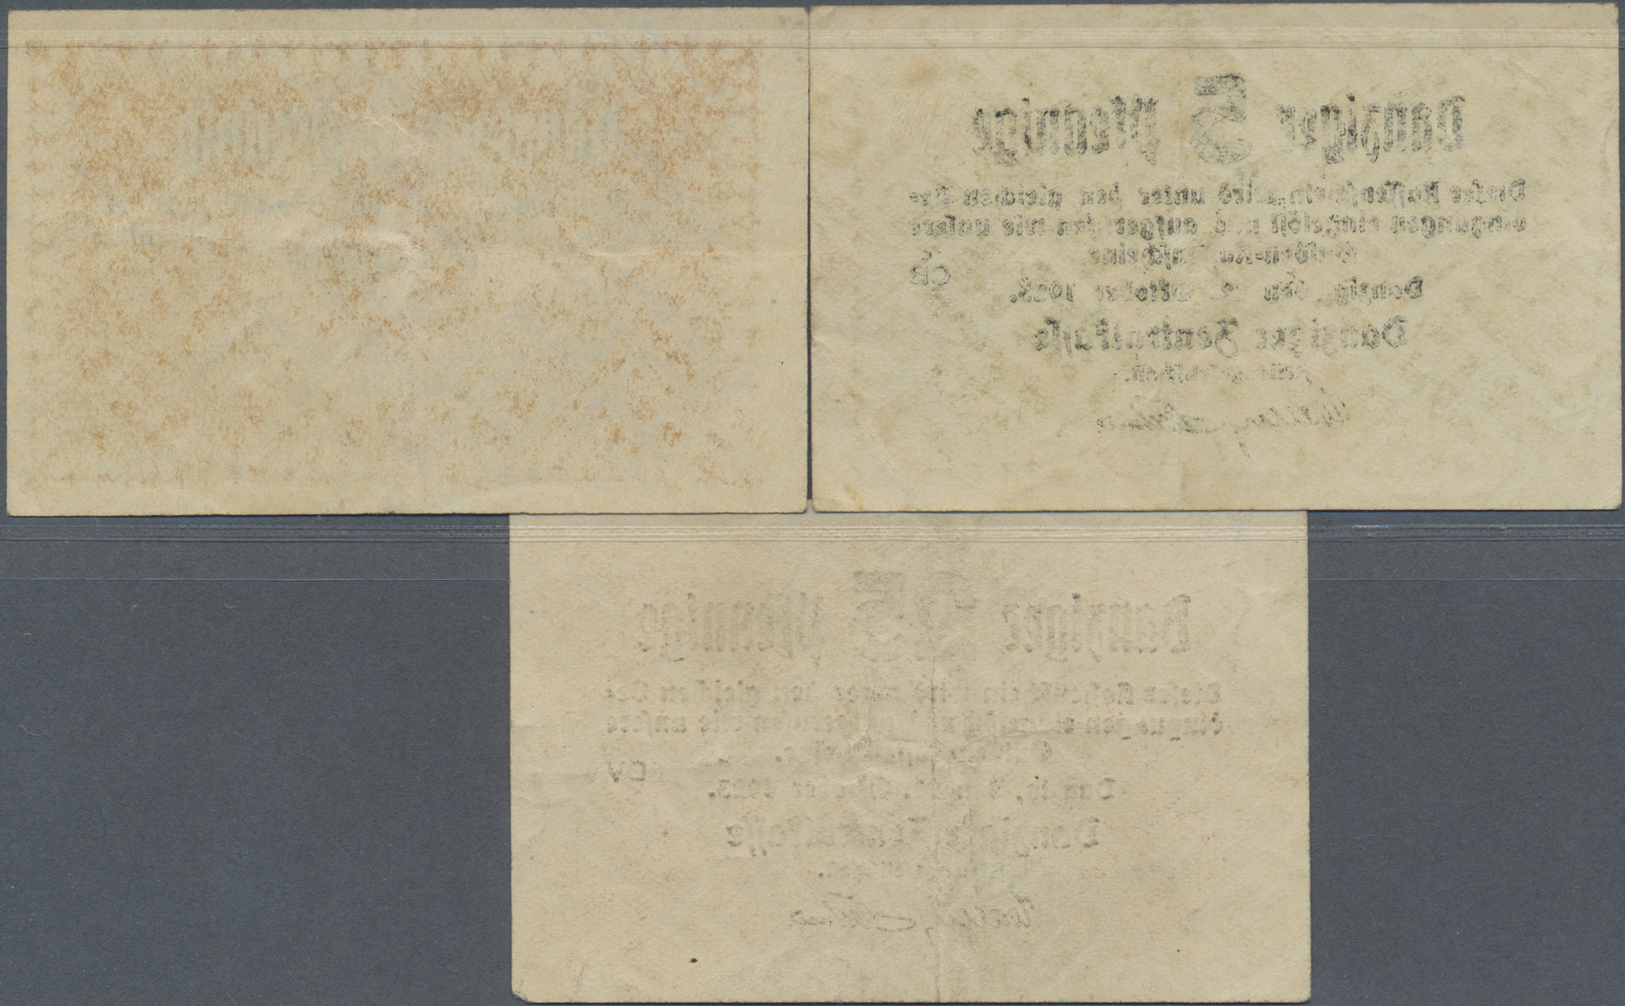 04080 Deutschland - Nebengebiete Deutsches Reich: Kleingeldscheine Danzig Zu 1, 5 Und 25 Pfennig 1923, Ro.811, 813, 815, - Autres & Non Classés